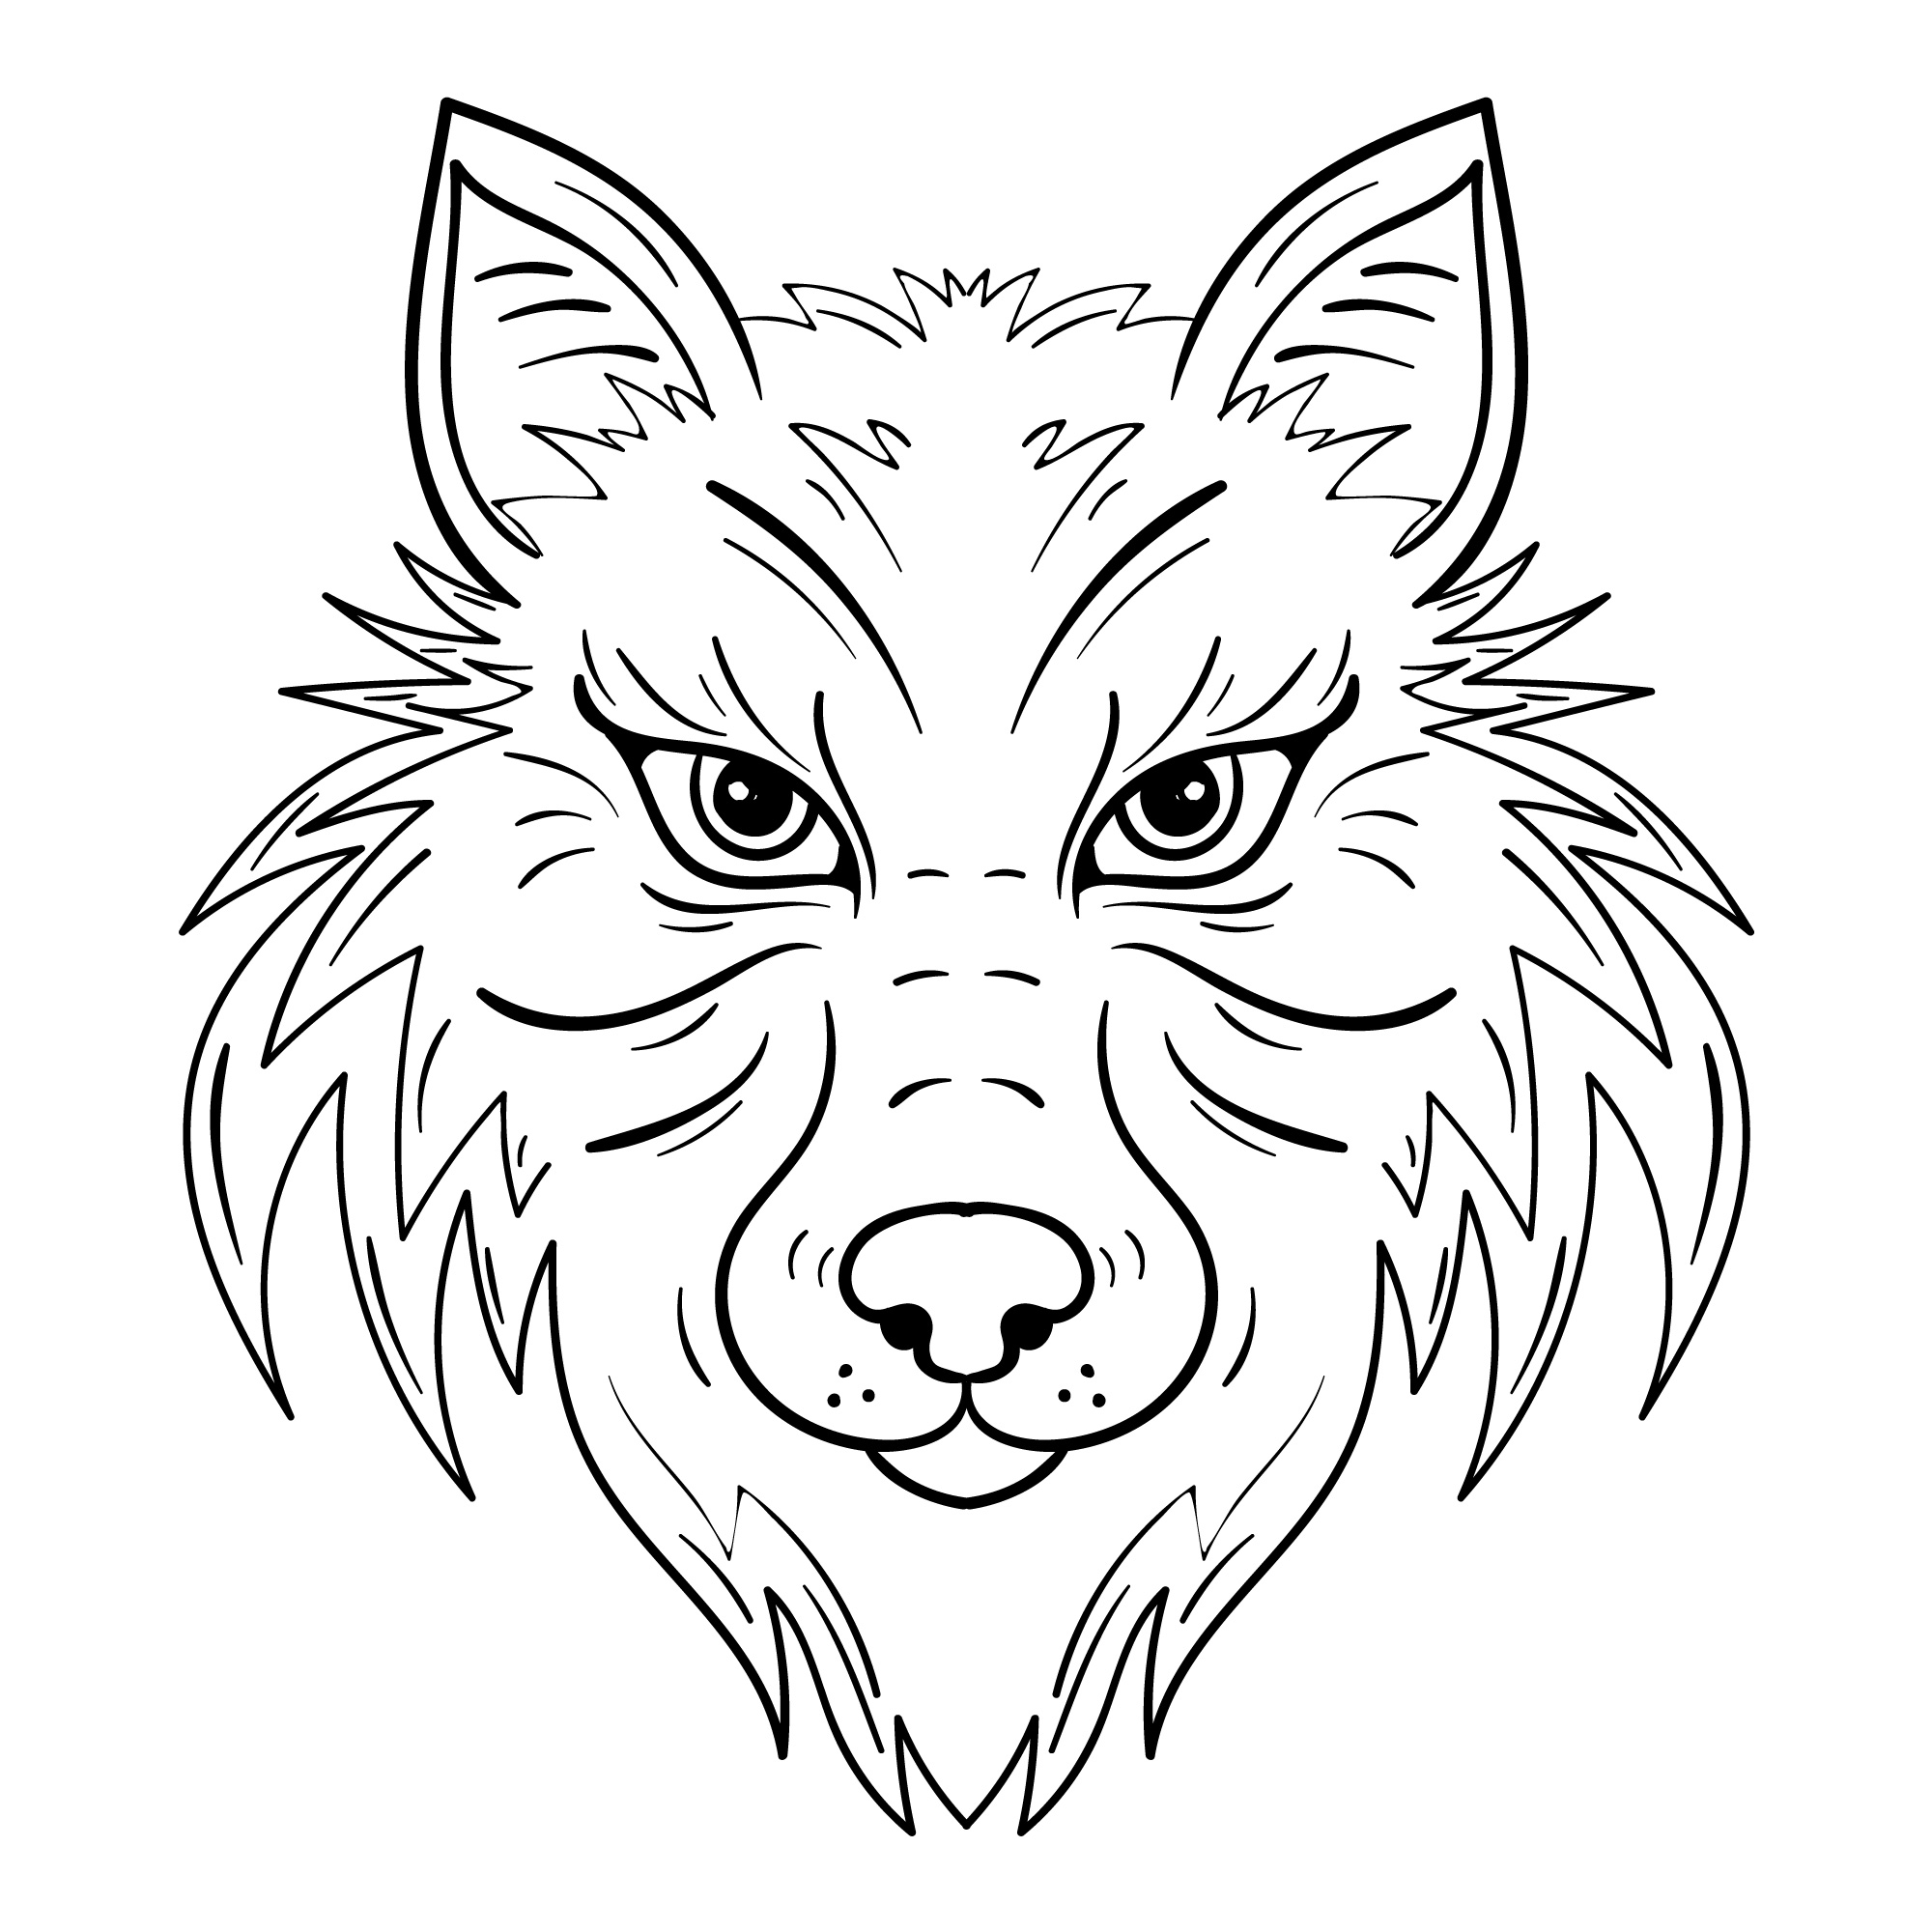 Раскраска лицо волка формата А4 в высоком качестве